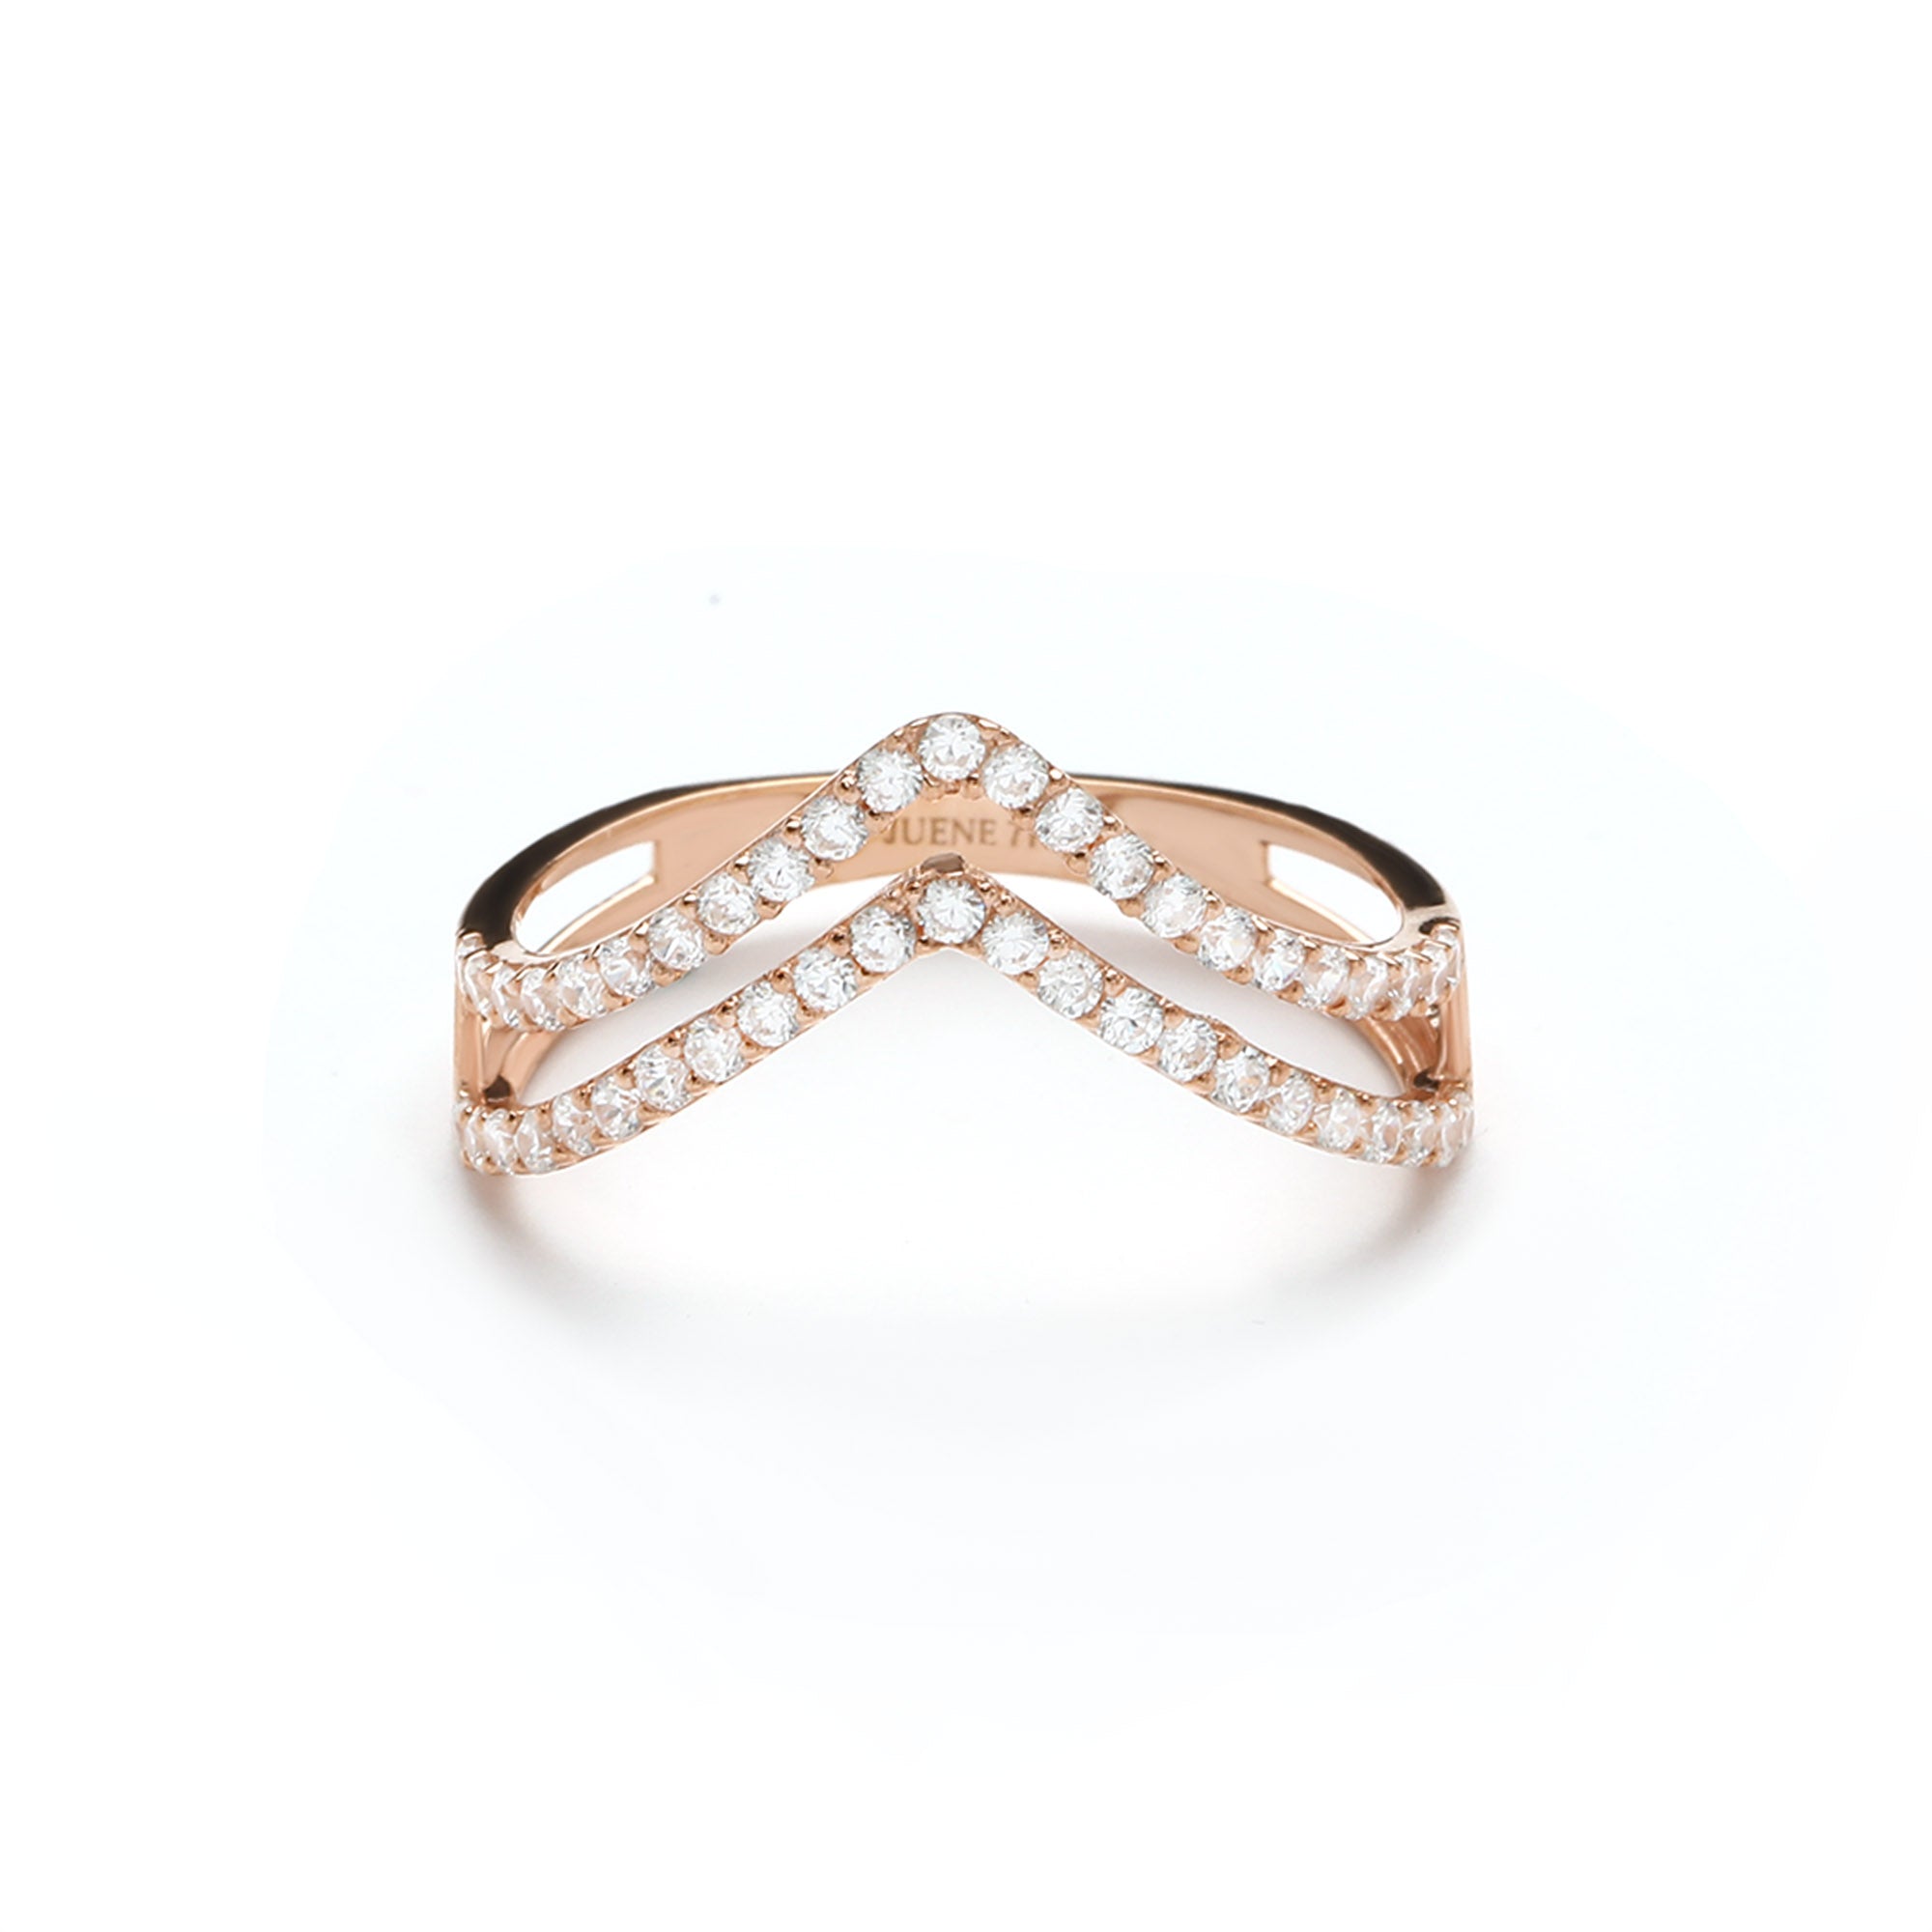 Irena Rings 03 - Juene Jewelry